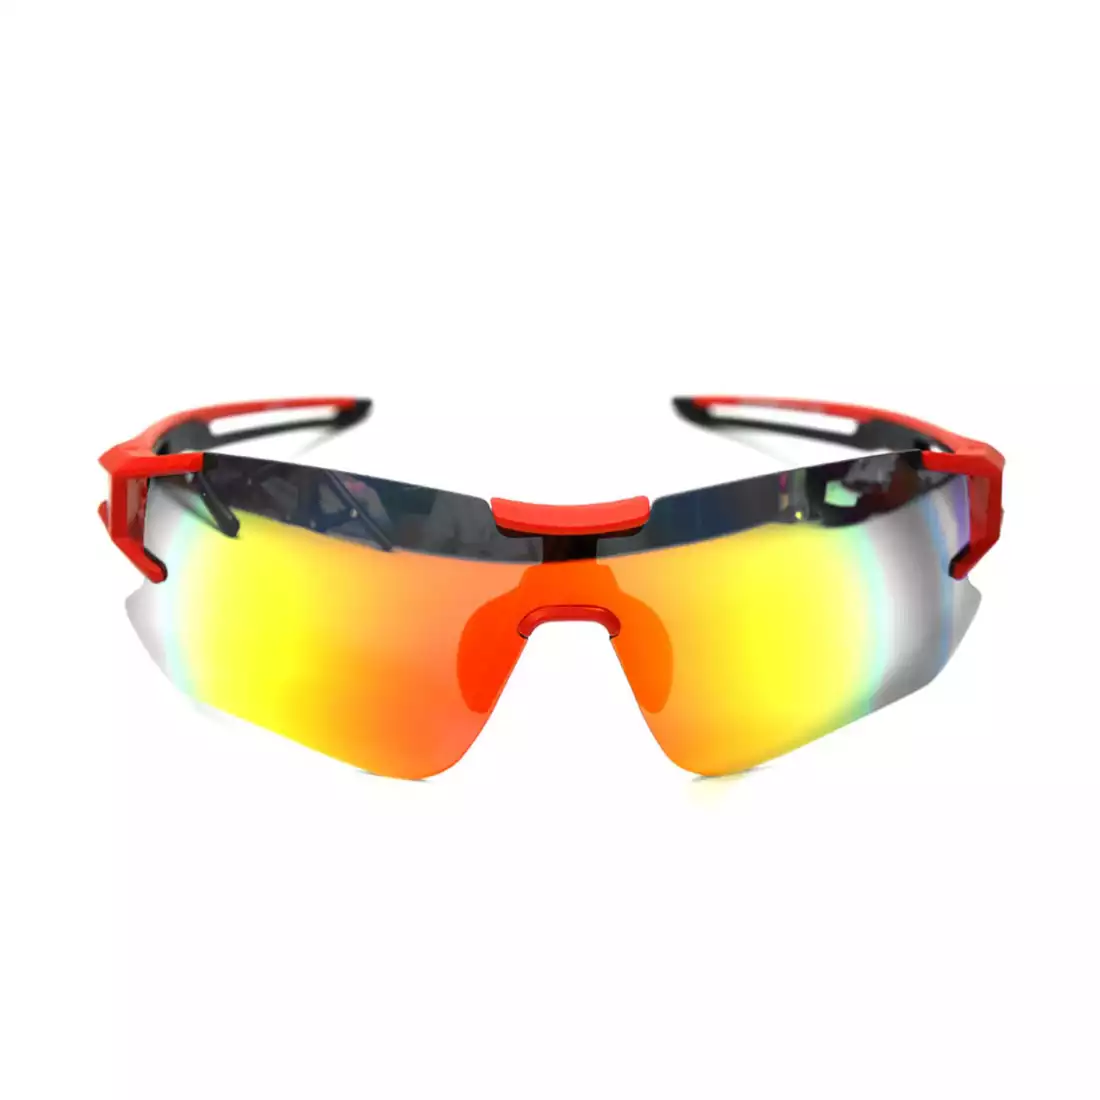 Rockbros 10128 okulary sportowe z polaryzacją + wkładka korekcyjna black-red 